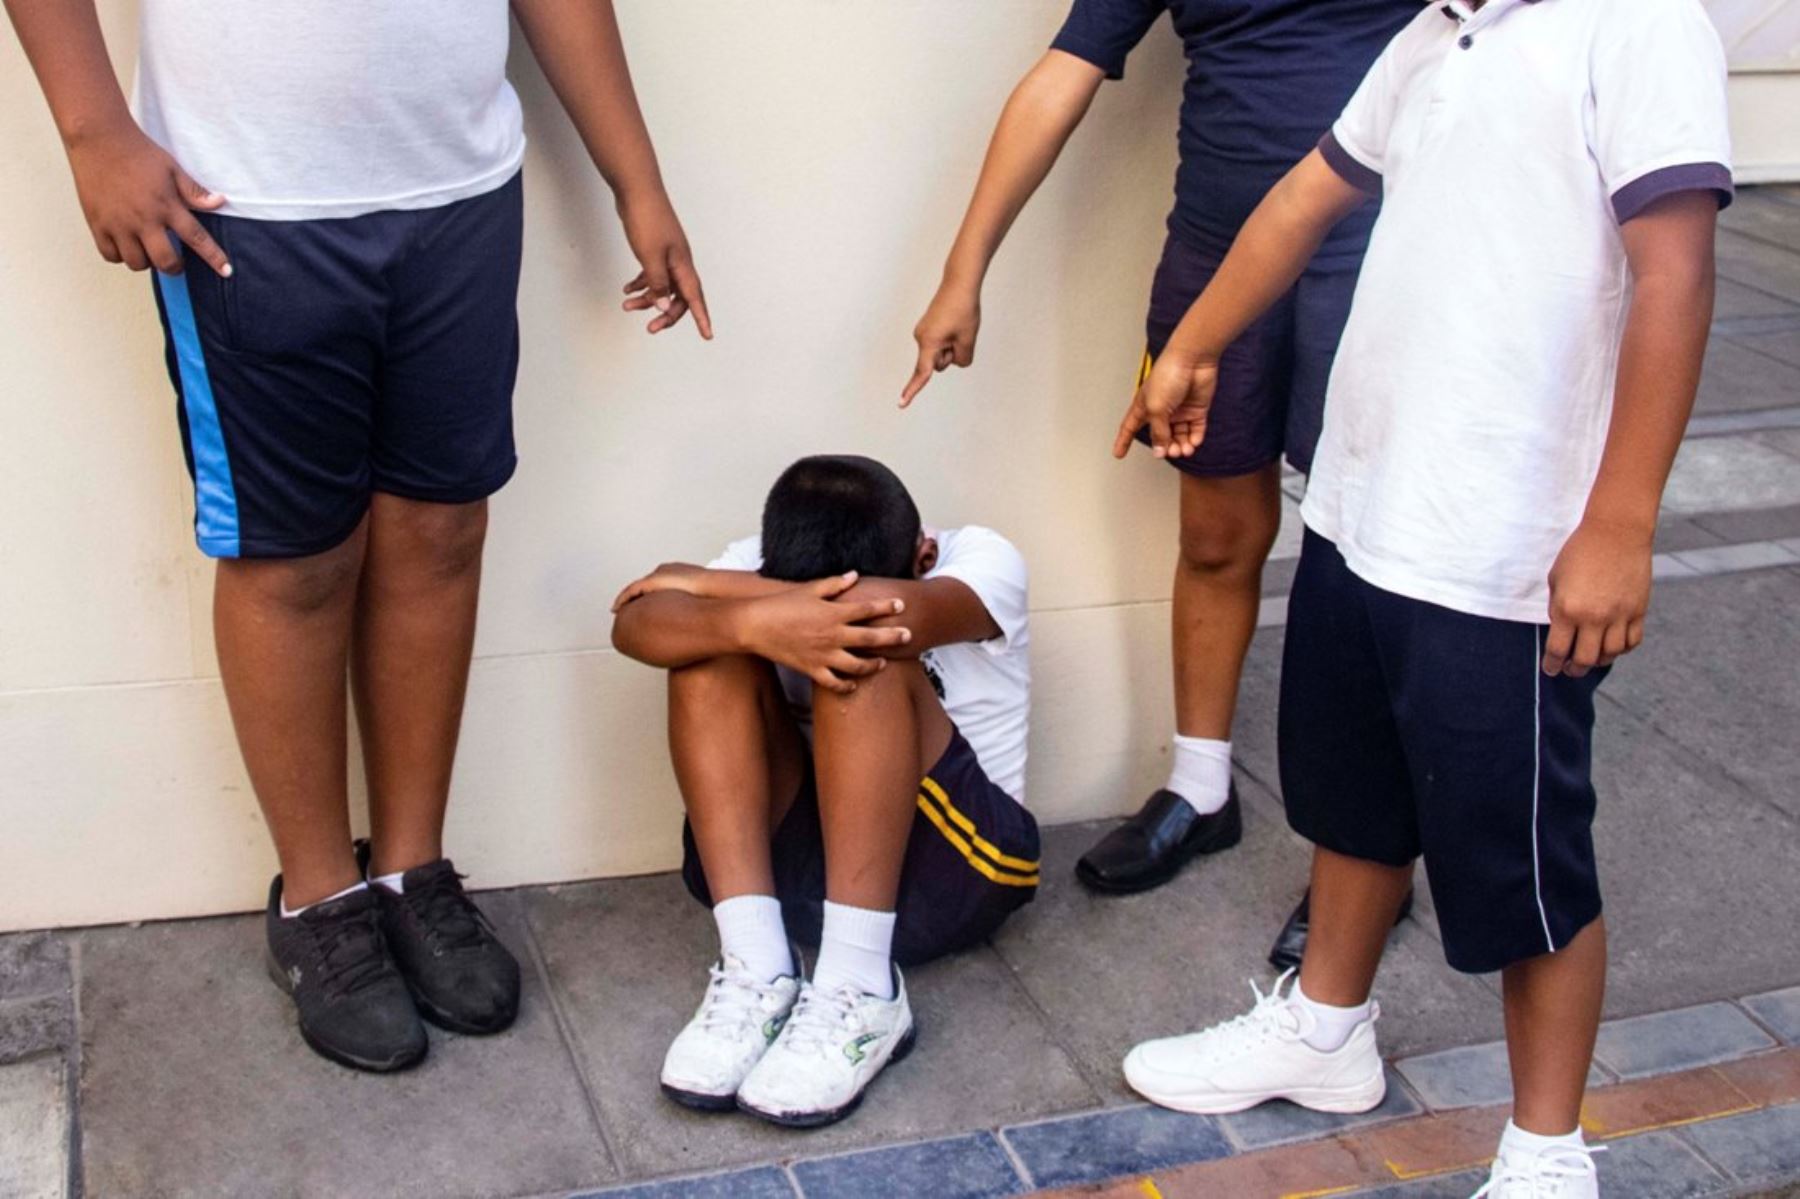 Las autoridades abordan lo sucedido en la escuela de San Juan como un caso de bullying extremo (Foto: Andina)